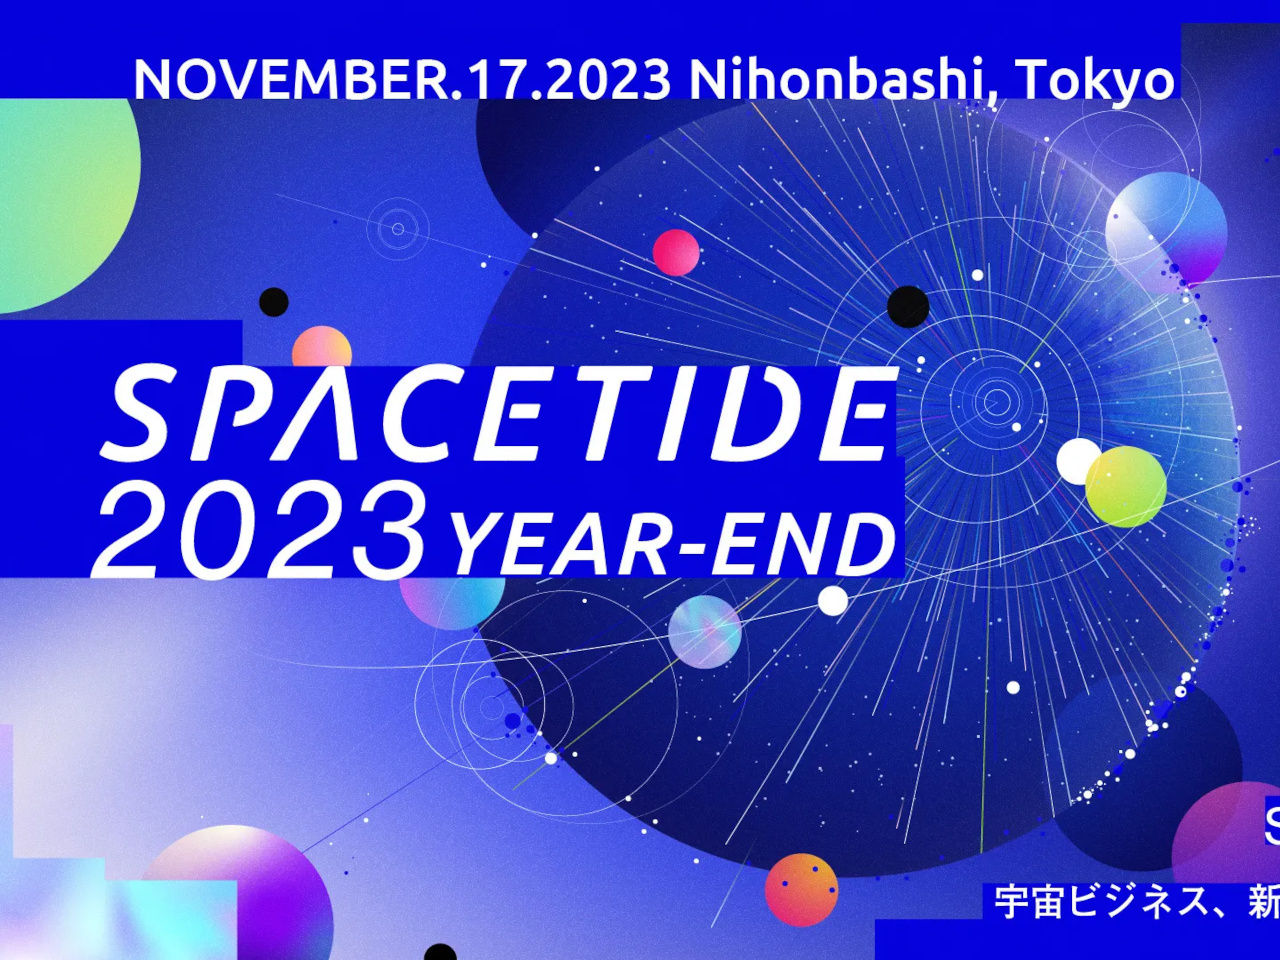 空幕担当者も登壇--「SPACETIDE 2023 Year-End」、11月17日に開催